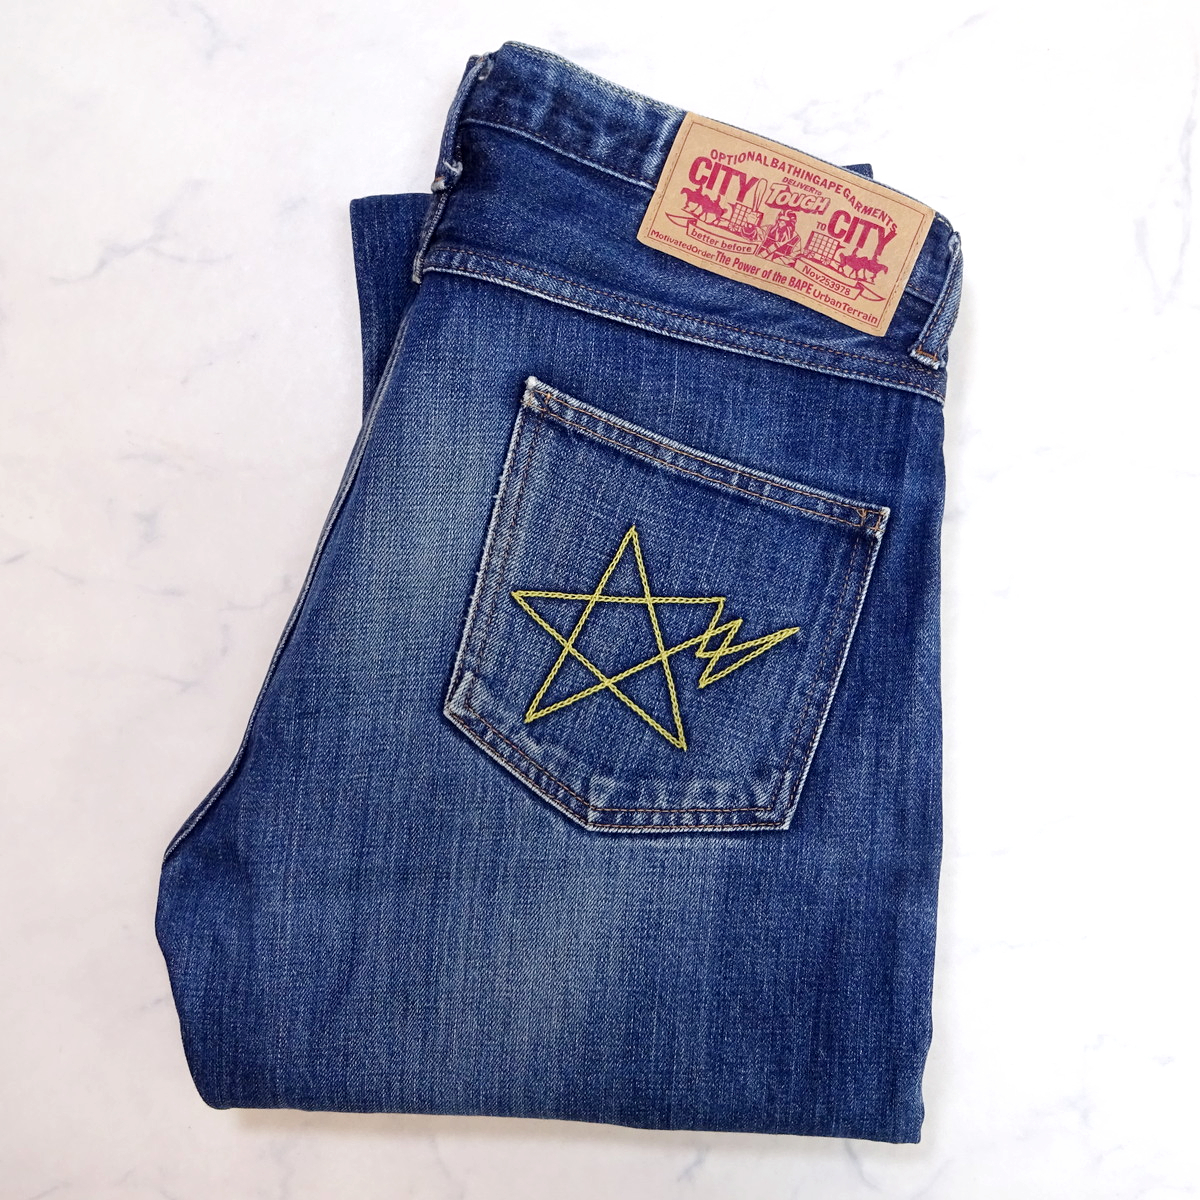 A BATHING APE Bay sing Ape бедра Star цепь вышивка Denim джинсы size L W36 соответствует сделано в Японии 